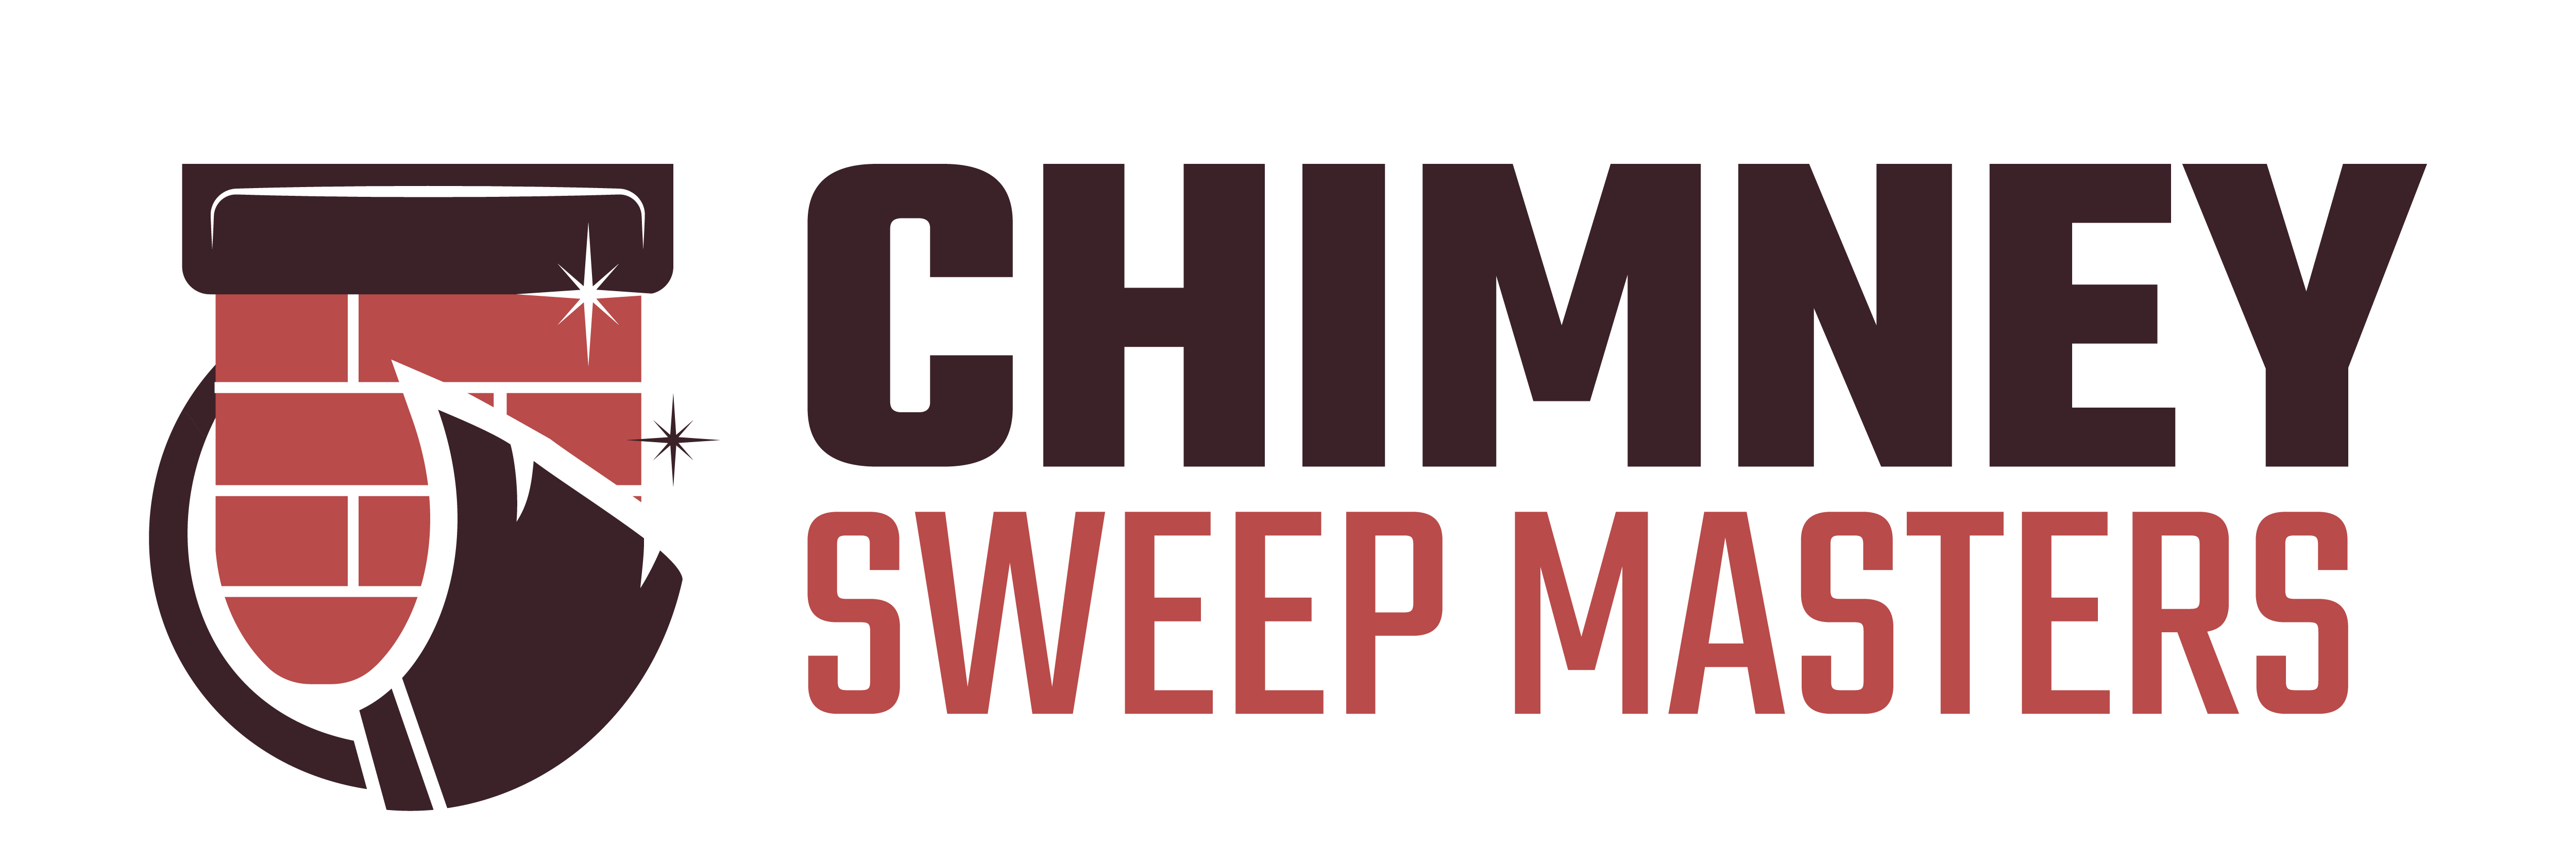 Chimney Sweep Masters Hawthorne Logo